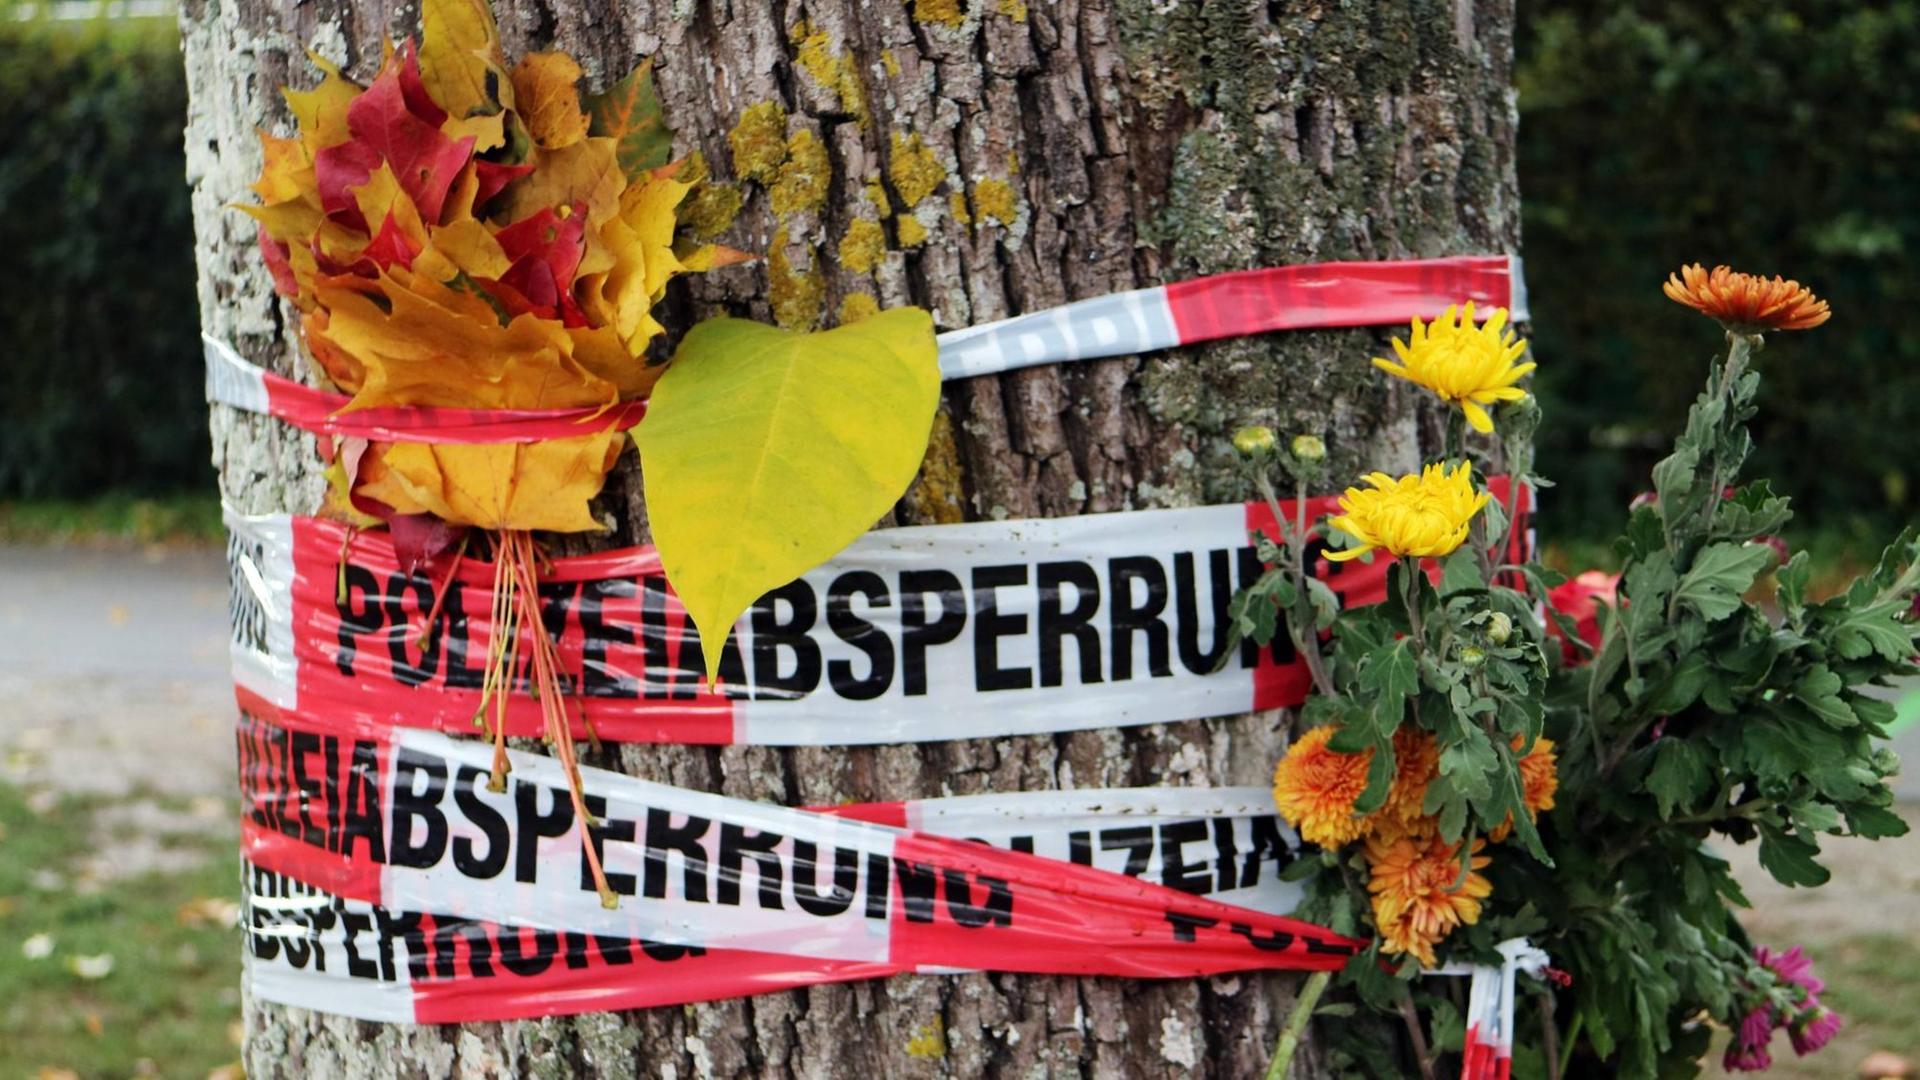 Blumen und Herbstlaub stecken zwischen den Absperrbändern der Polizei an der Dreisam in Freiburg, wo eine junge Frau getötet wurde.